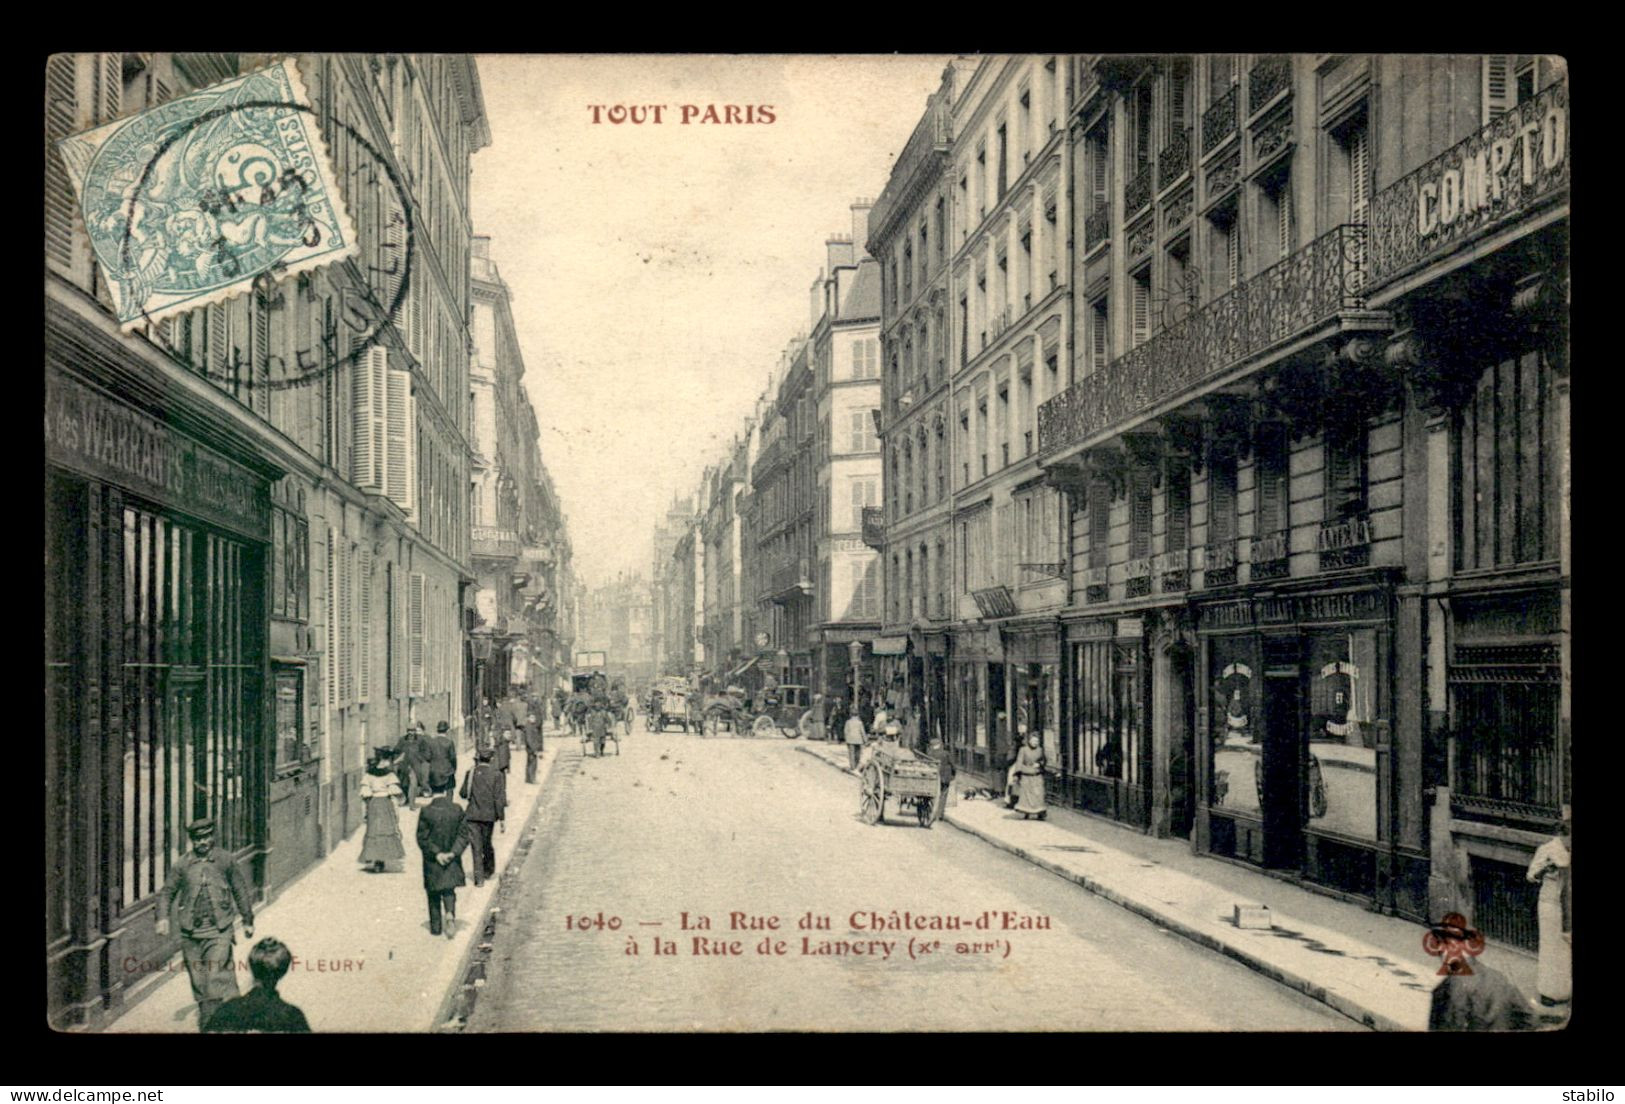 75 - PARIS - 10EME - TOUT PARIS N°1040 - LA RUE DU CHATEAU-D'EAU A LA RUE DE LANCRY - EDITEUR FLEURY - Paris (10)